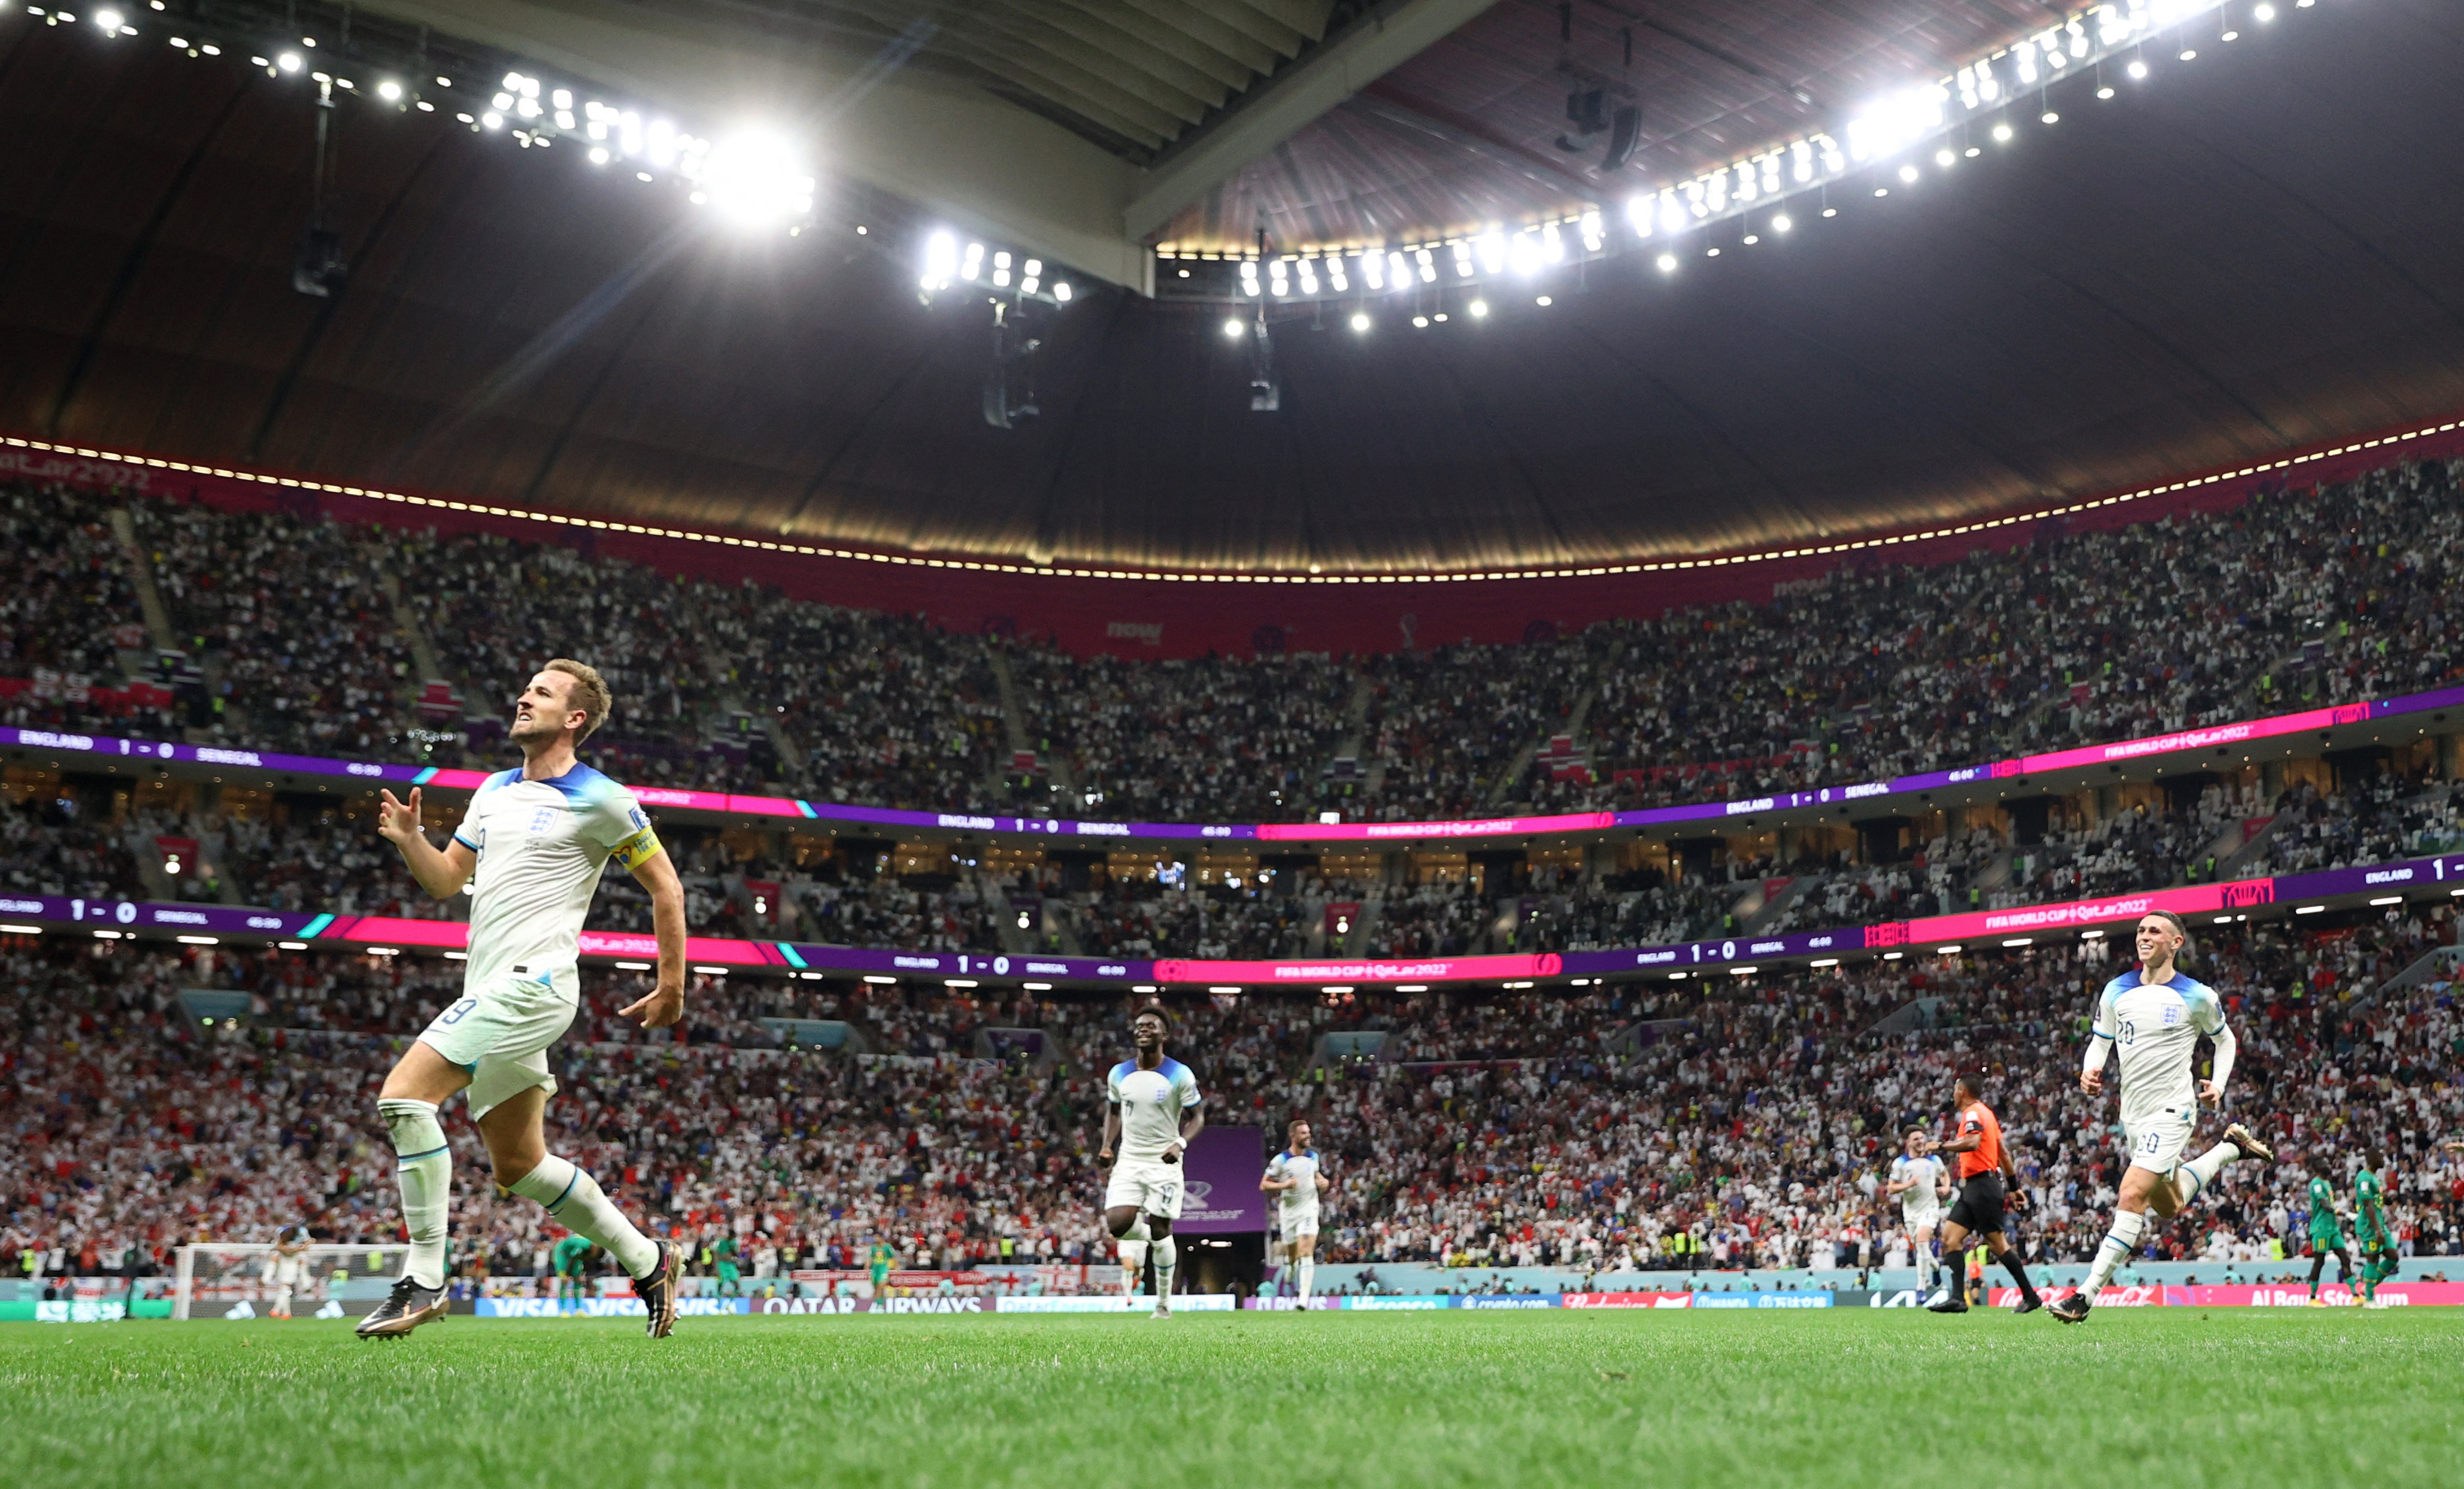 Calcio - Coppa del mondo FIFA Qatar 2022 - turno di 16 - Inghilterra - Senegal - Stadio al Bayt, al Khor, Qatar - 4 dicembre 2022 Harry Kane in Inghilterra festeggia il suo secondo gol - REUTERS / Carl Risen